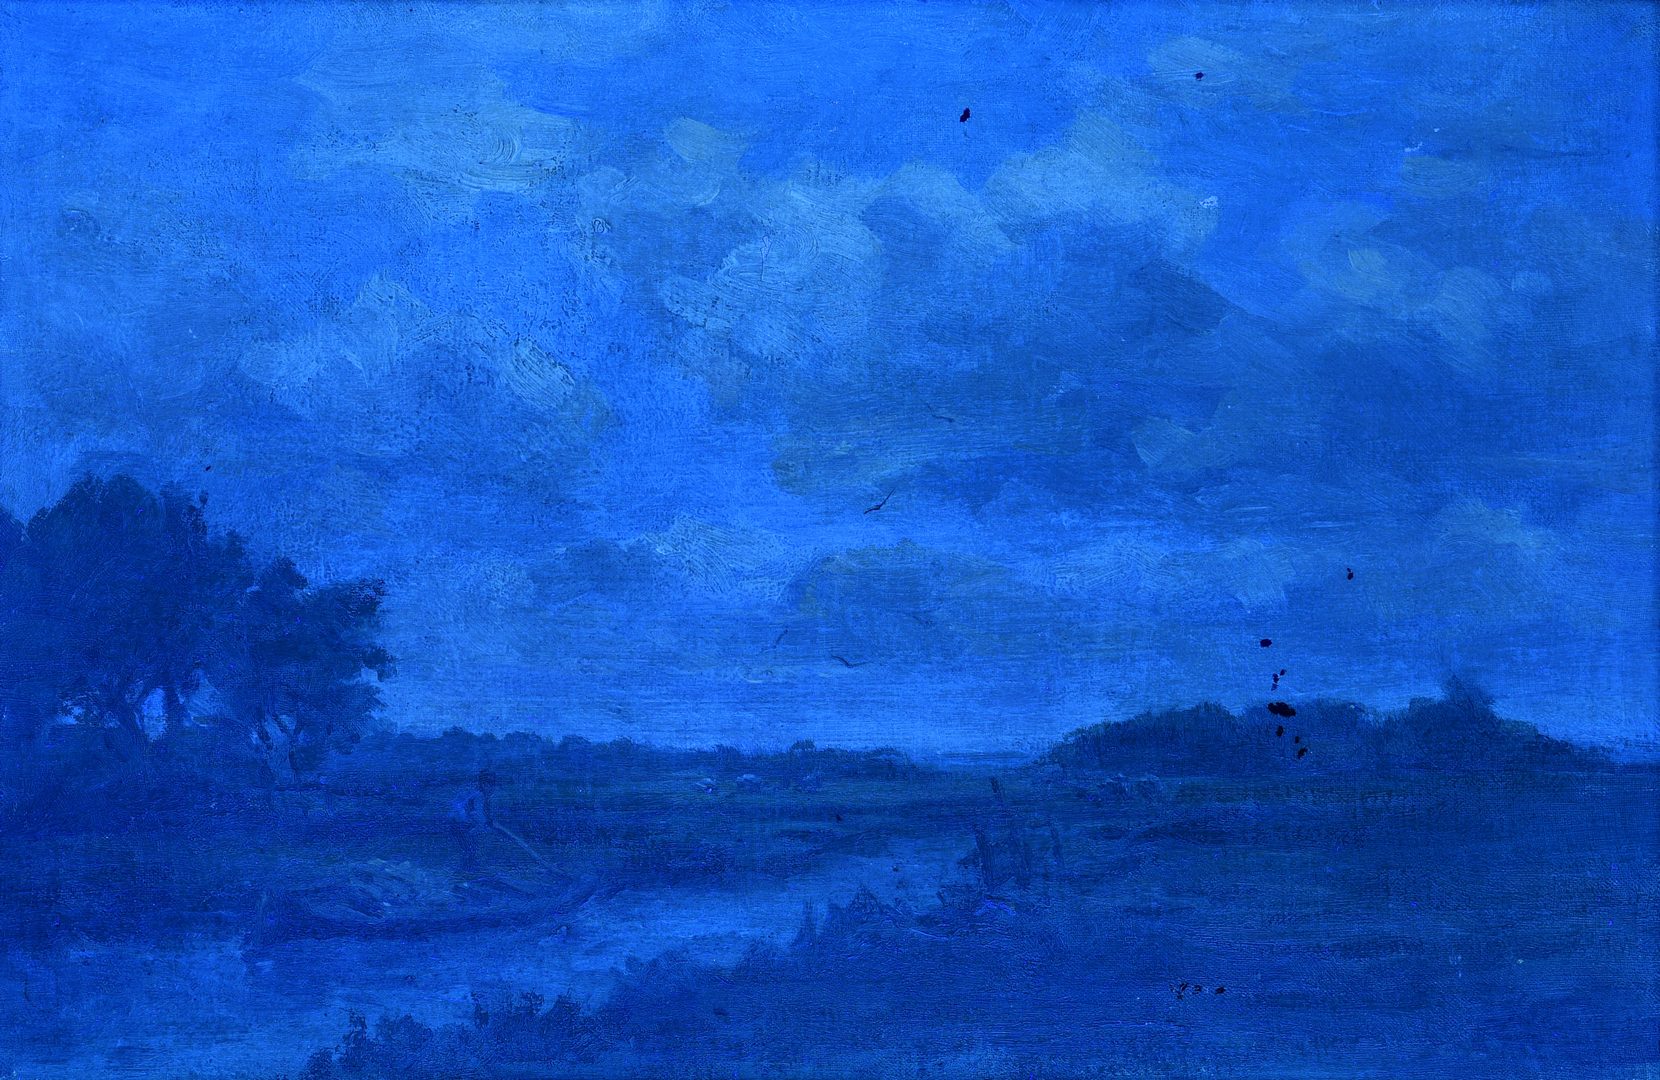 Lot 774: European Oil on Canvas River Landscape